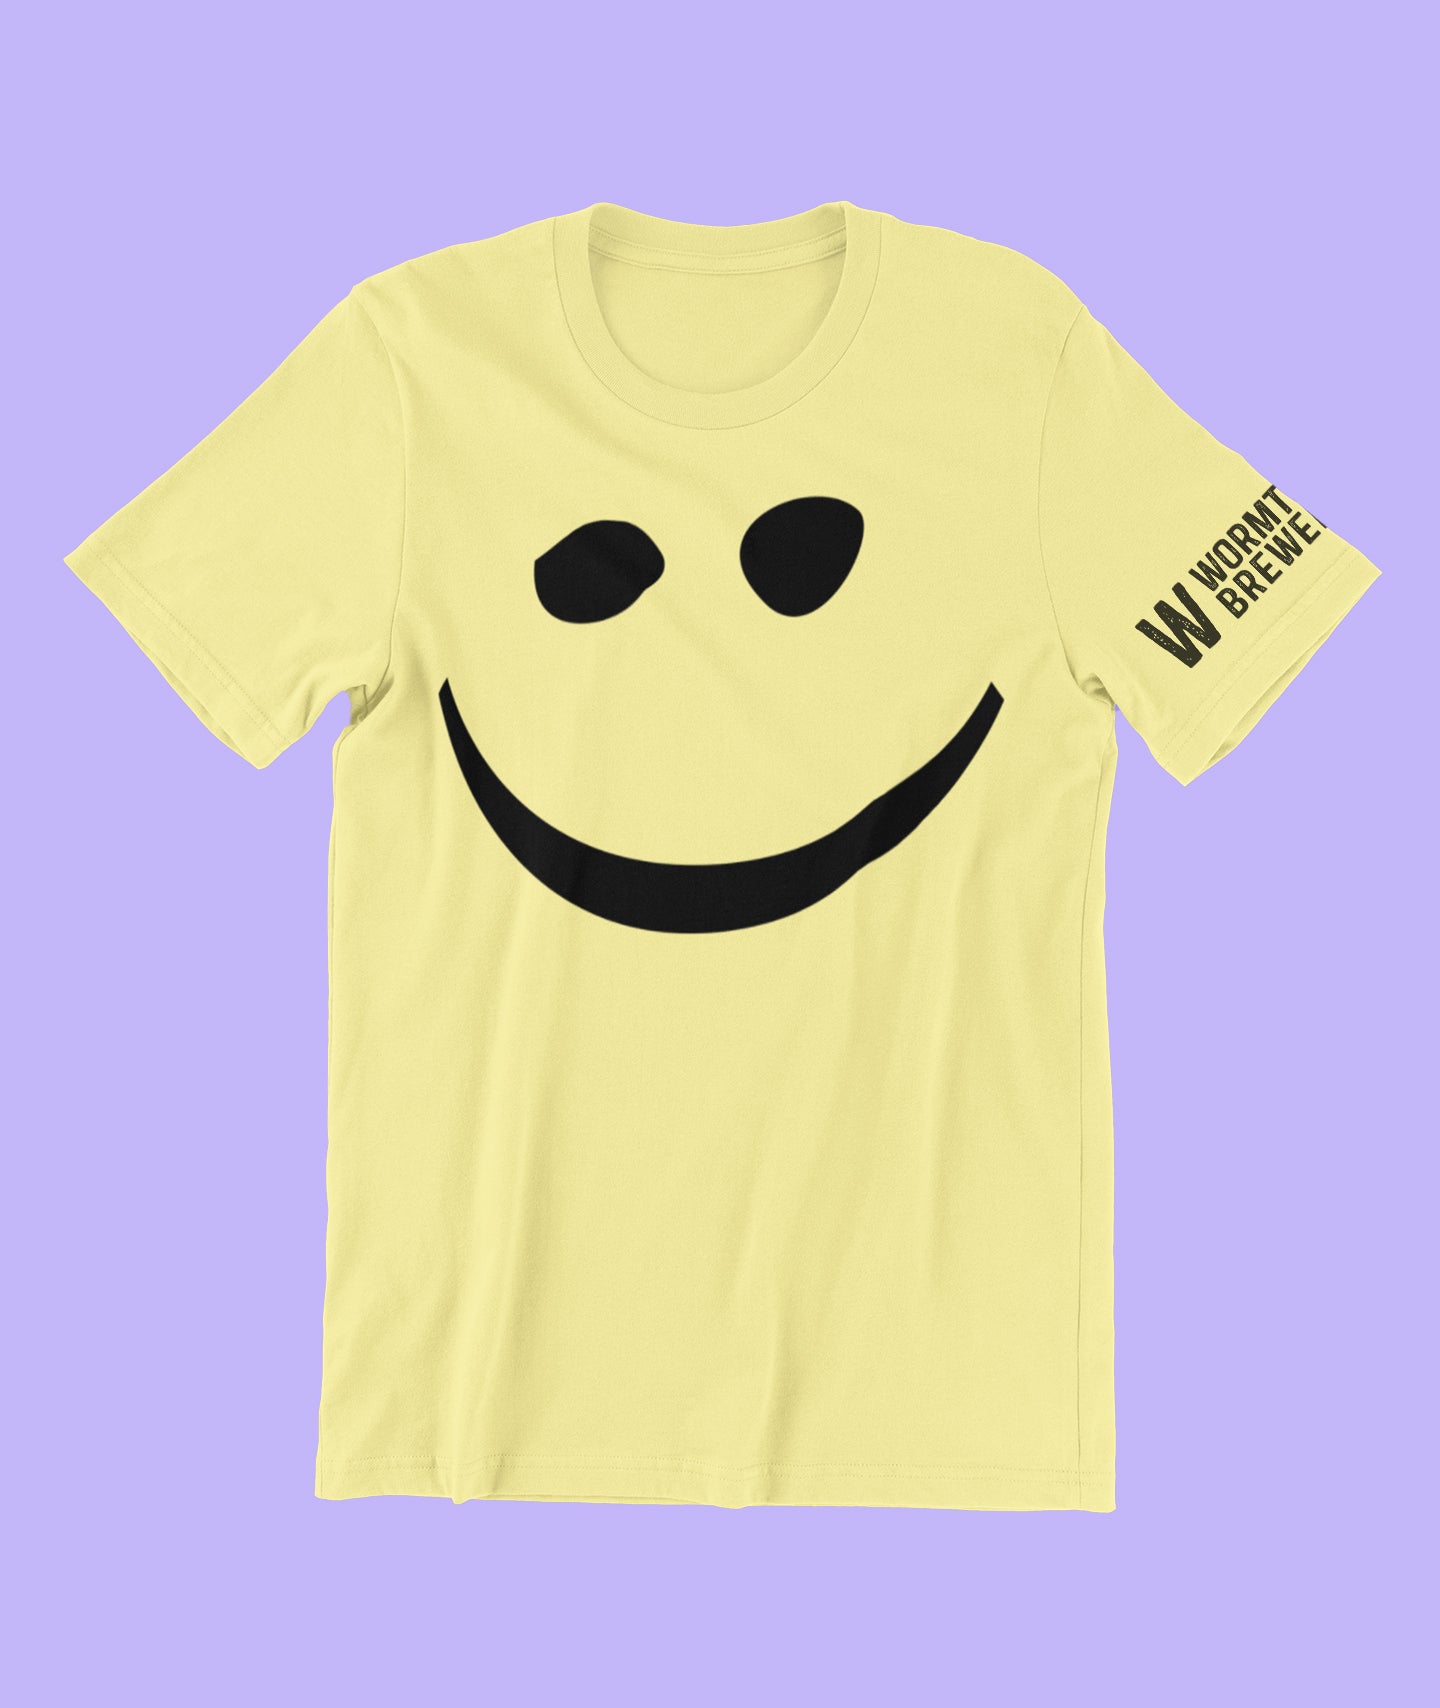 Be Hoppy Smile T-shirt